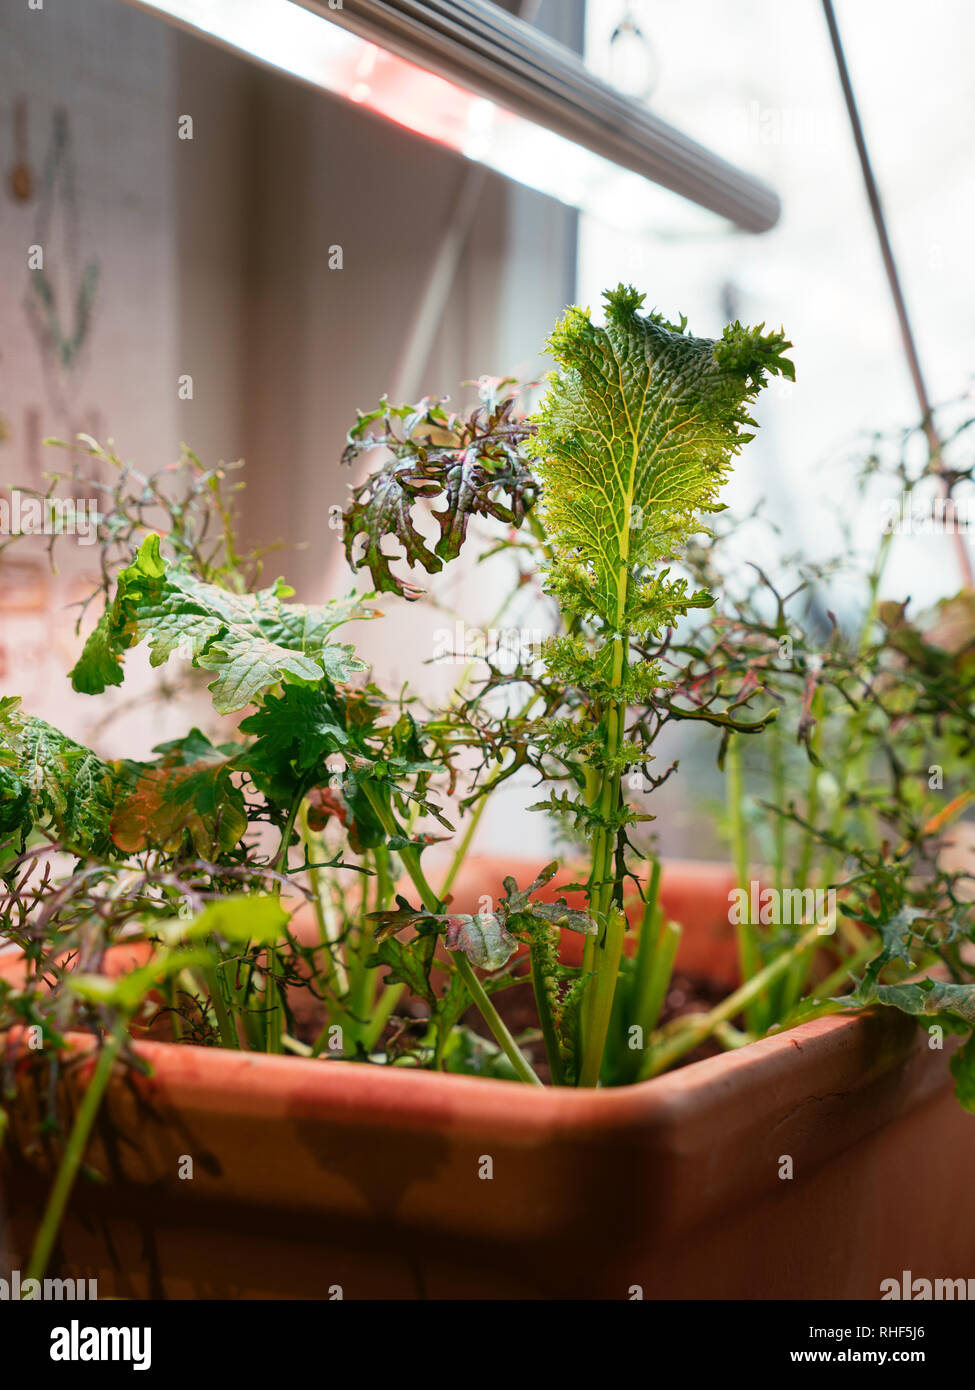 Oriental mostarde crescente in interni sotto una luce di crescere per fornire insalate fresche in inverno. Foto Stock